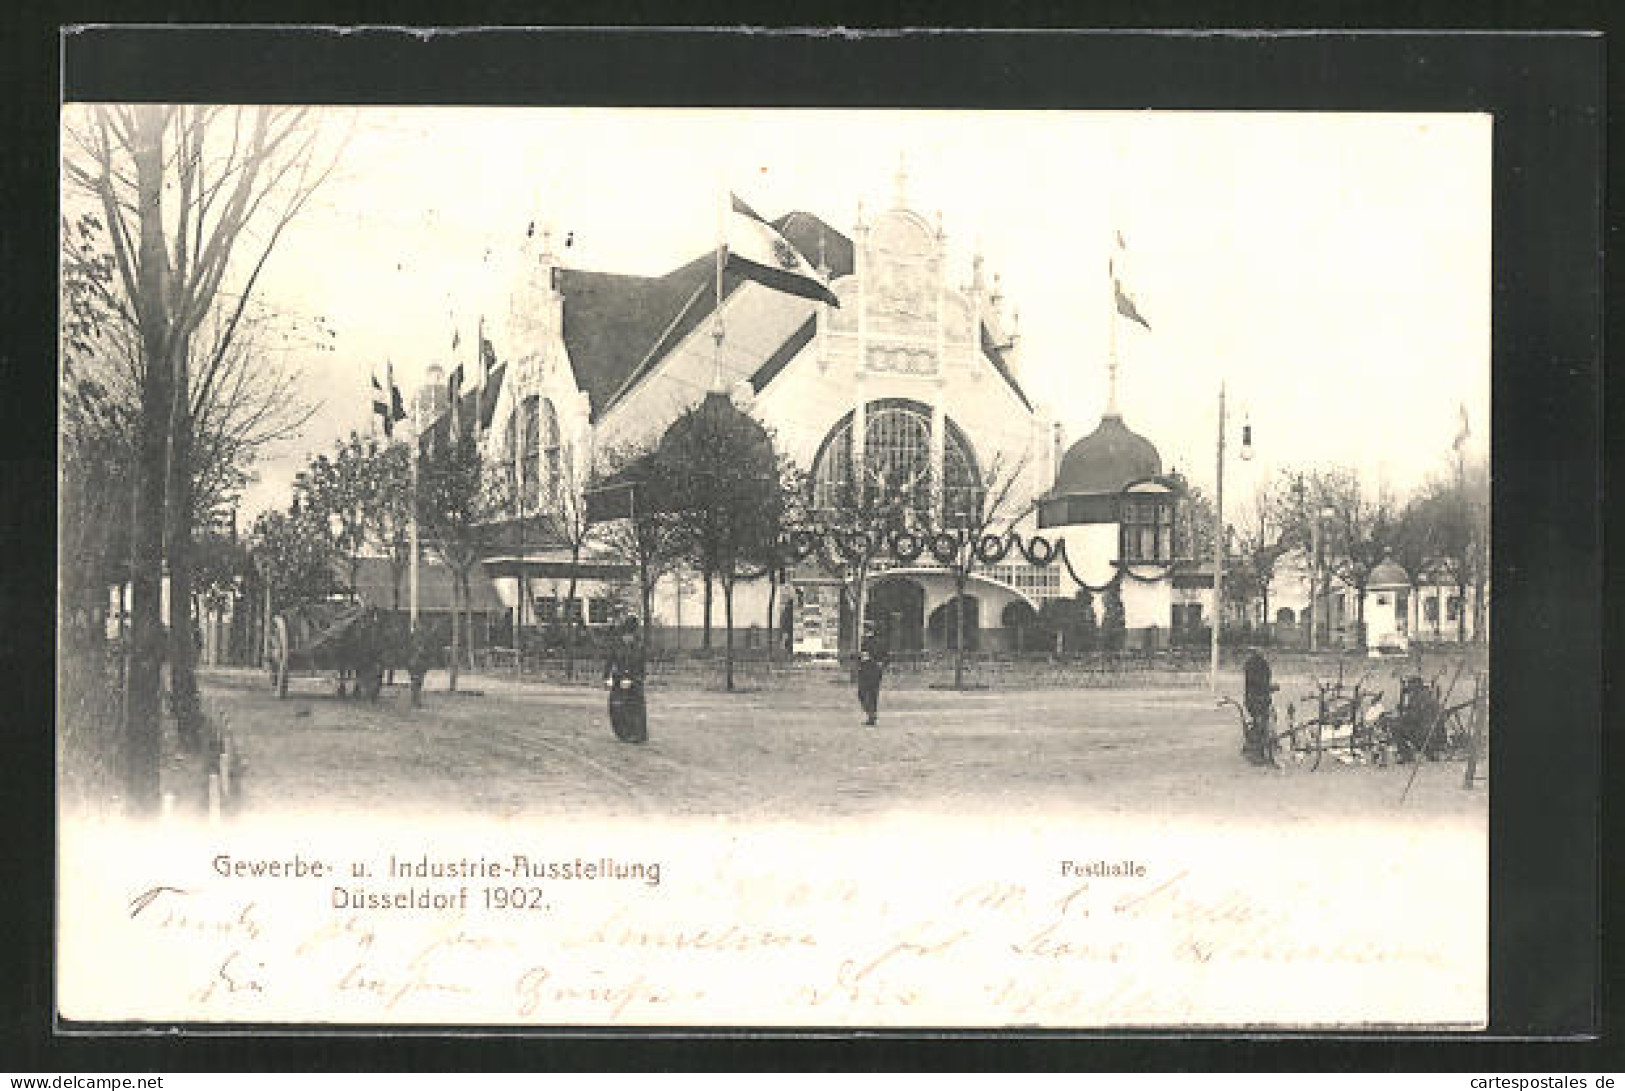 AK Düsseldorf, Gewerbe-u. Industrie-Ausstellung 1902, Festhalle  - Expositions